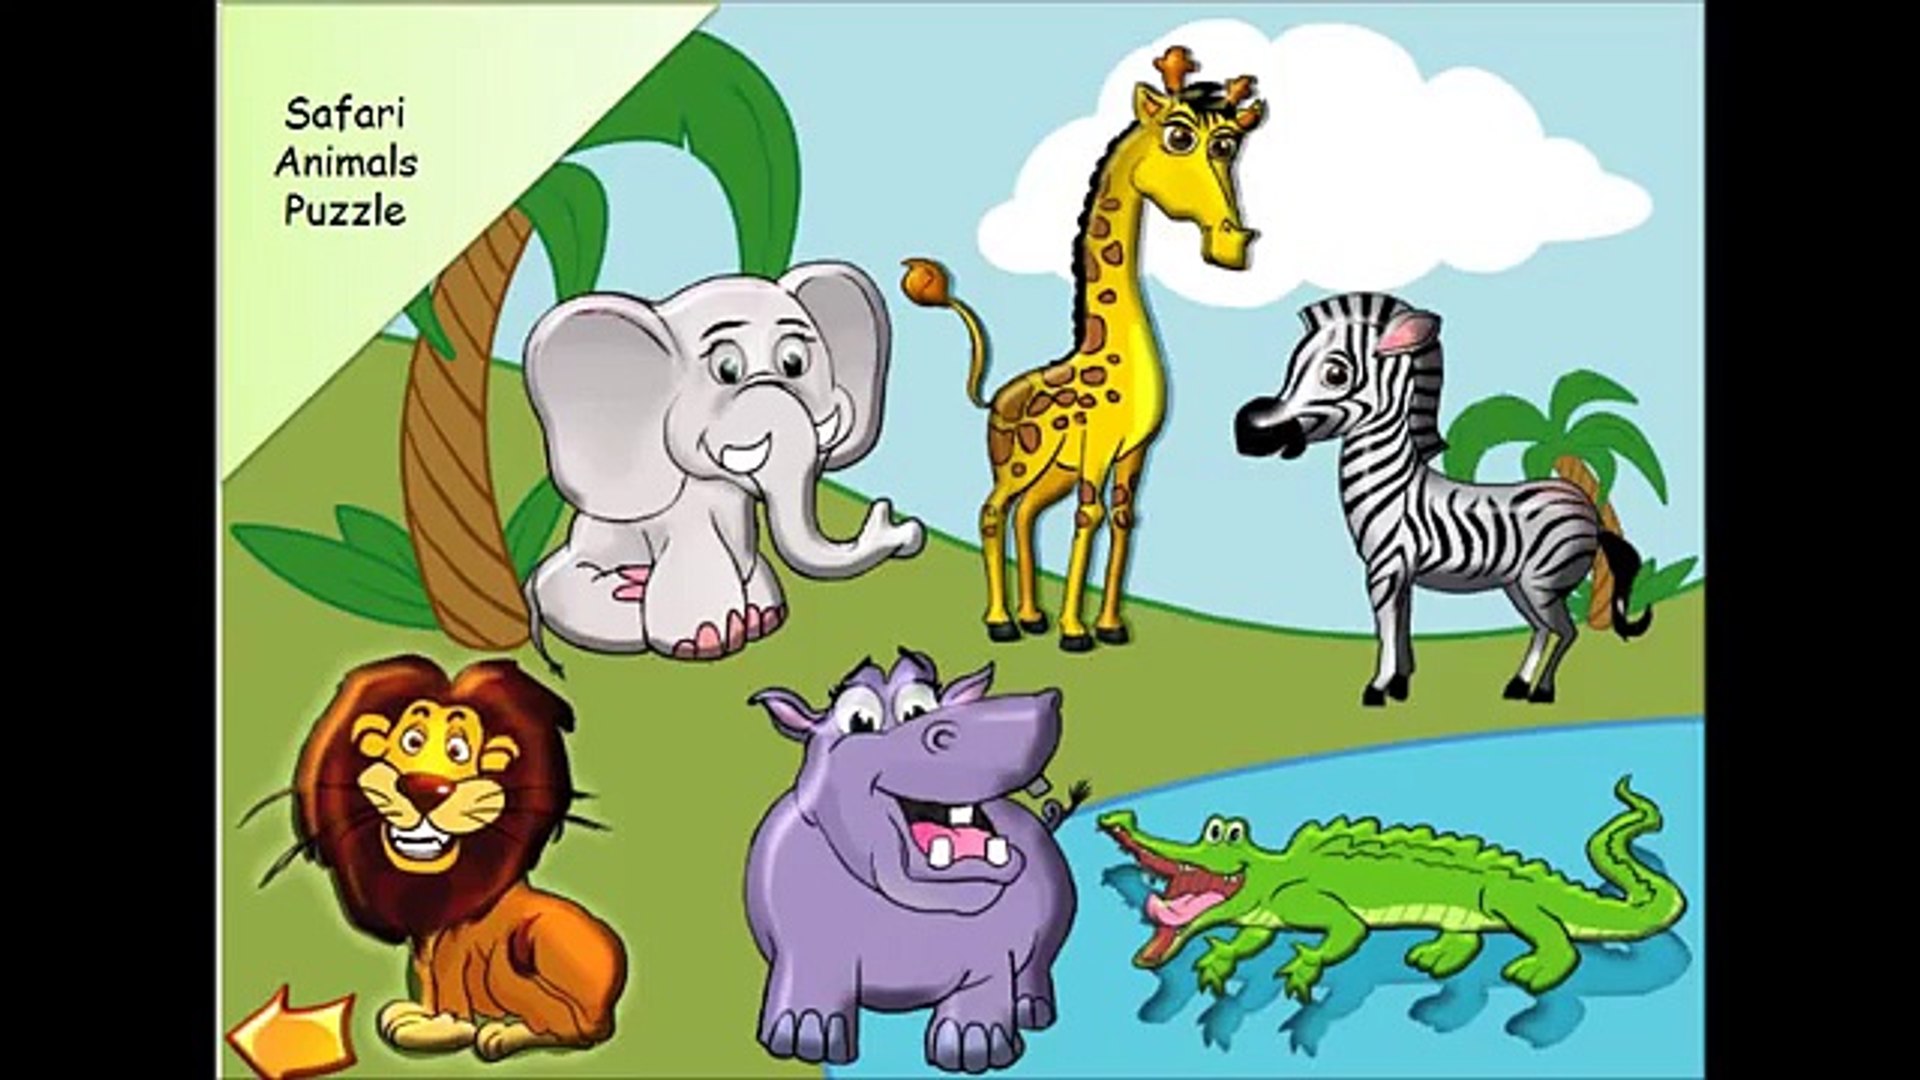 Animal 1 животное. Животные Африки. Животные Африки для детей. Изображения животных для детей. Животные Африки дл ядетй.